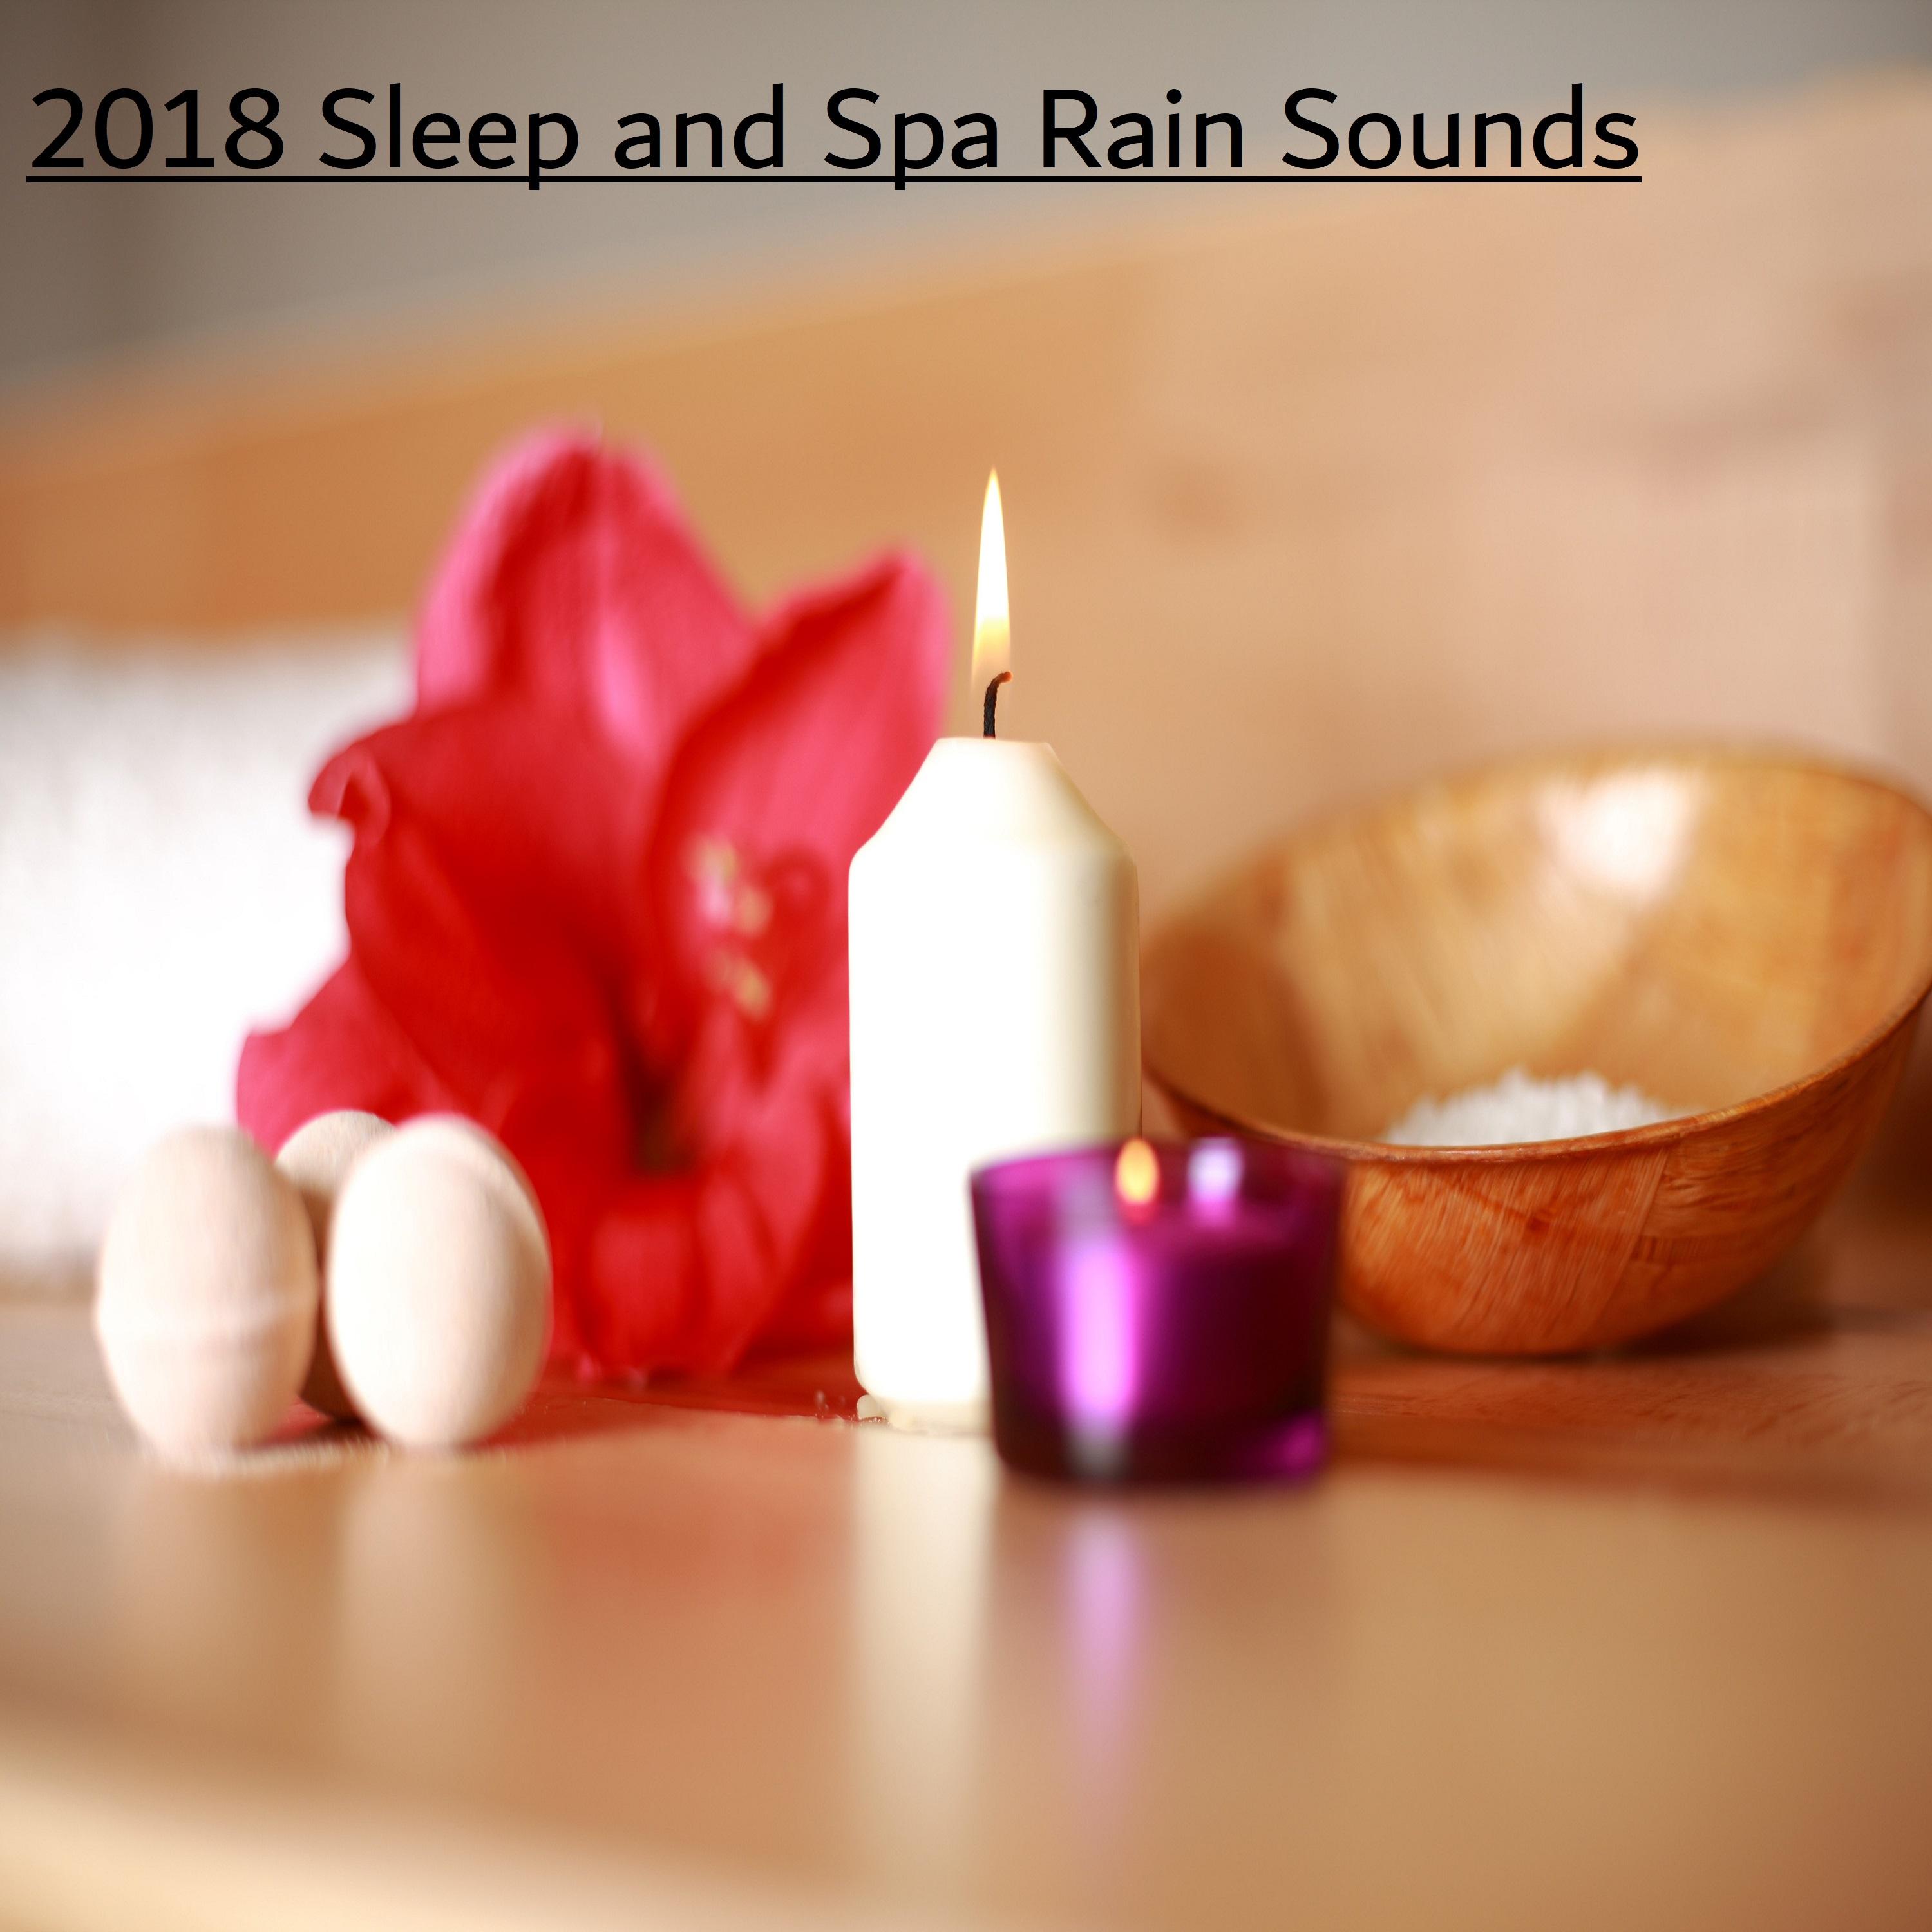 2018 Sleep and Spa Rain Sounds